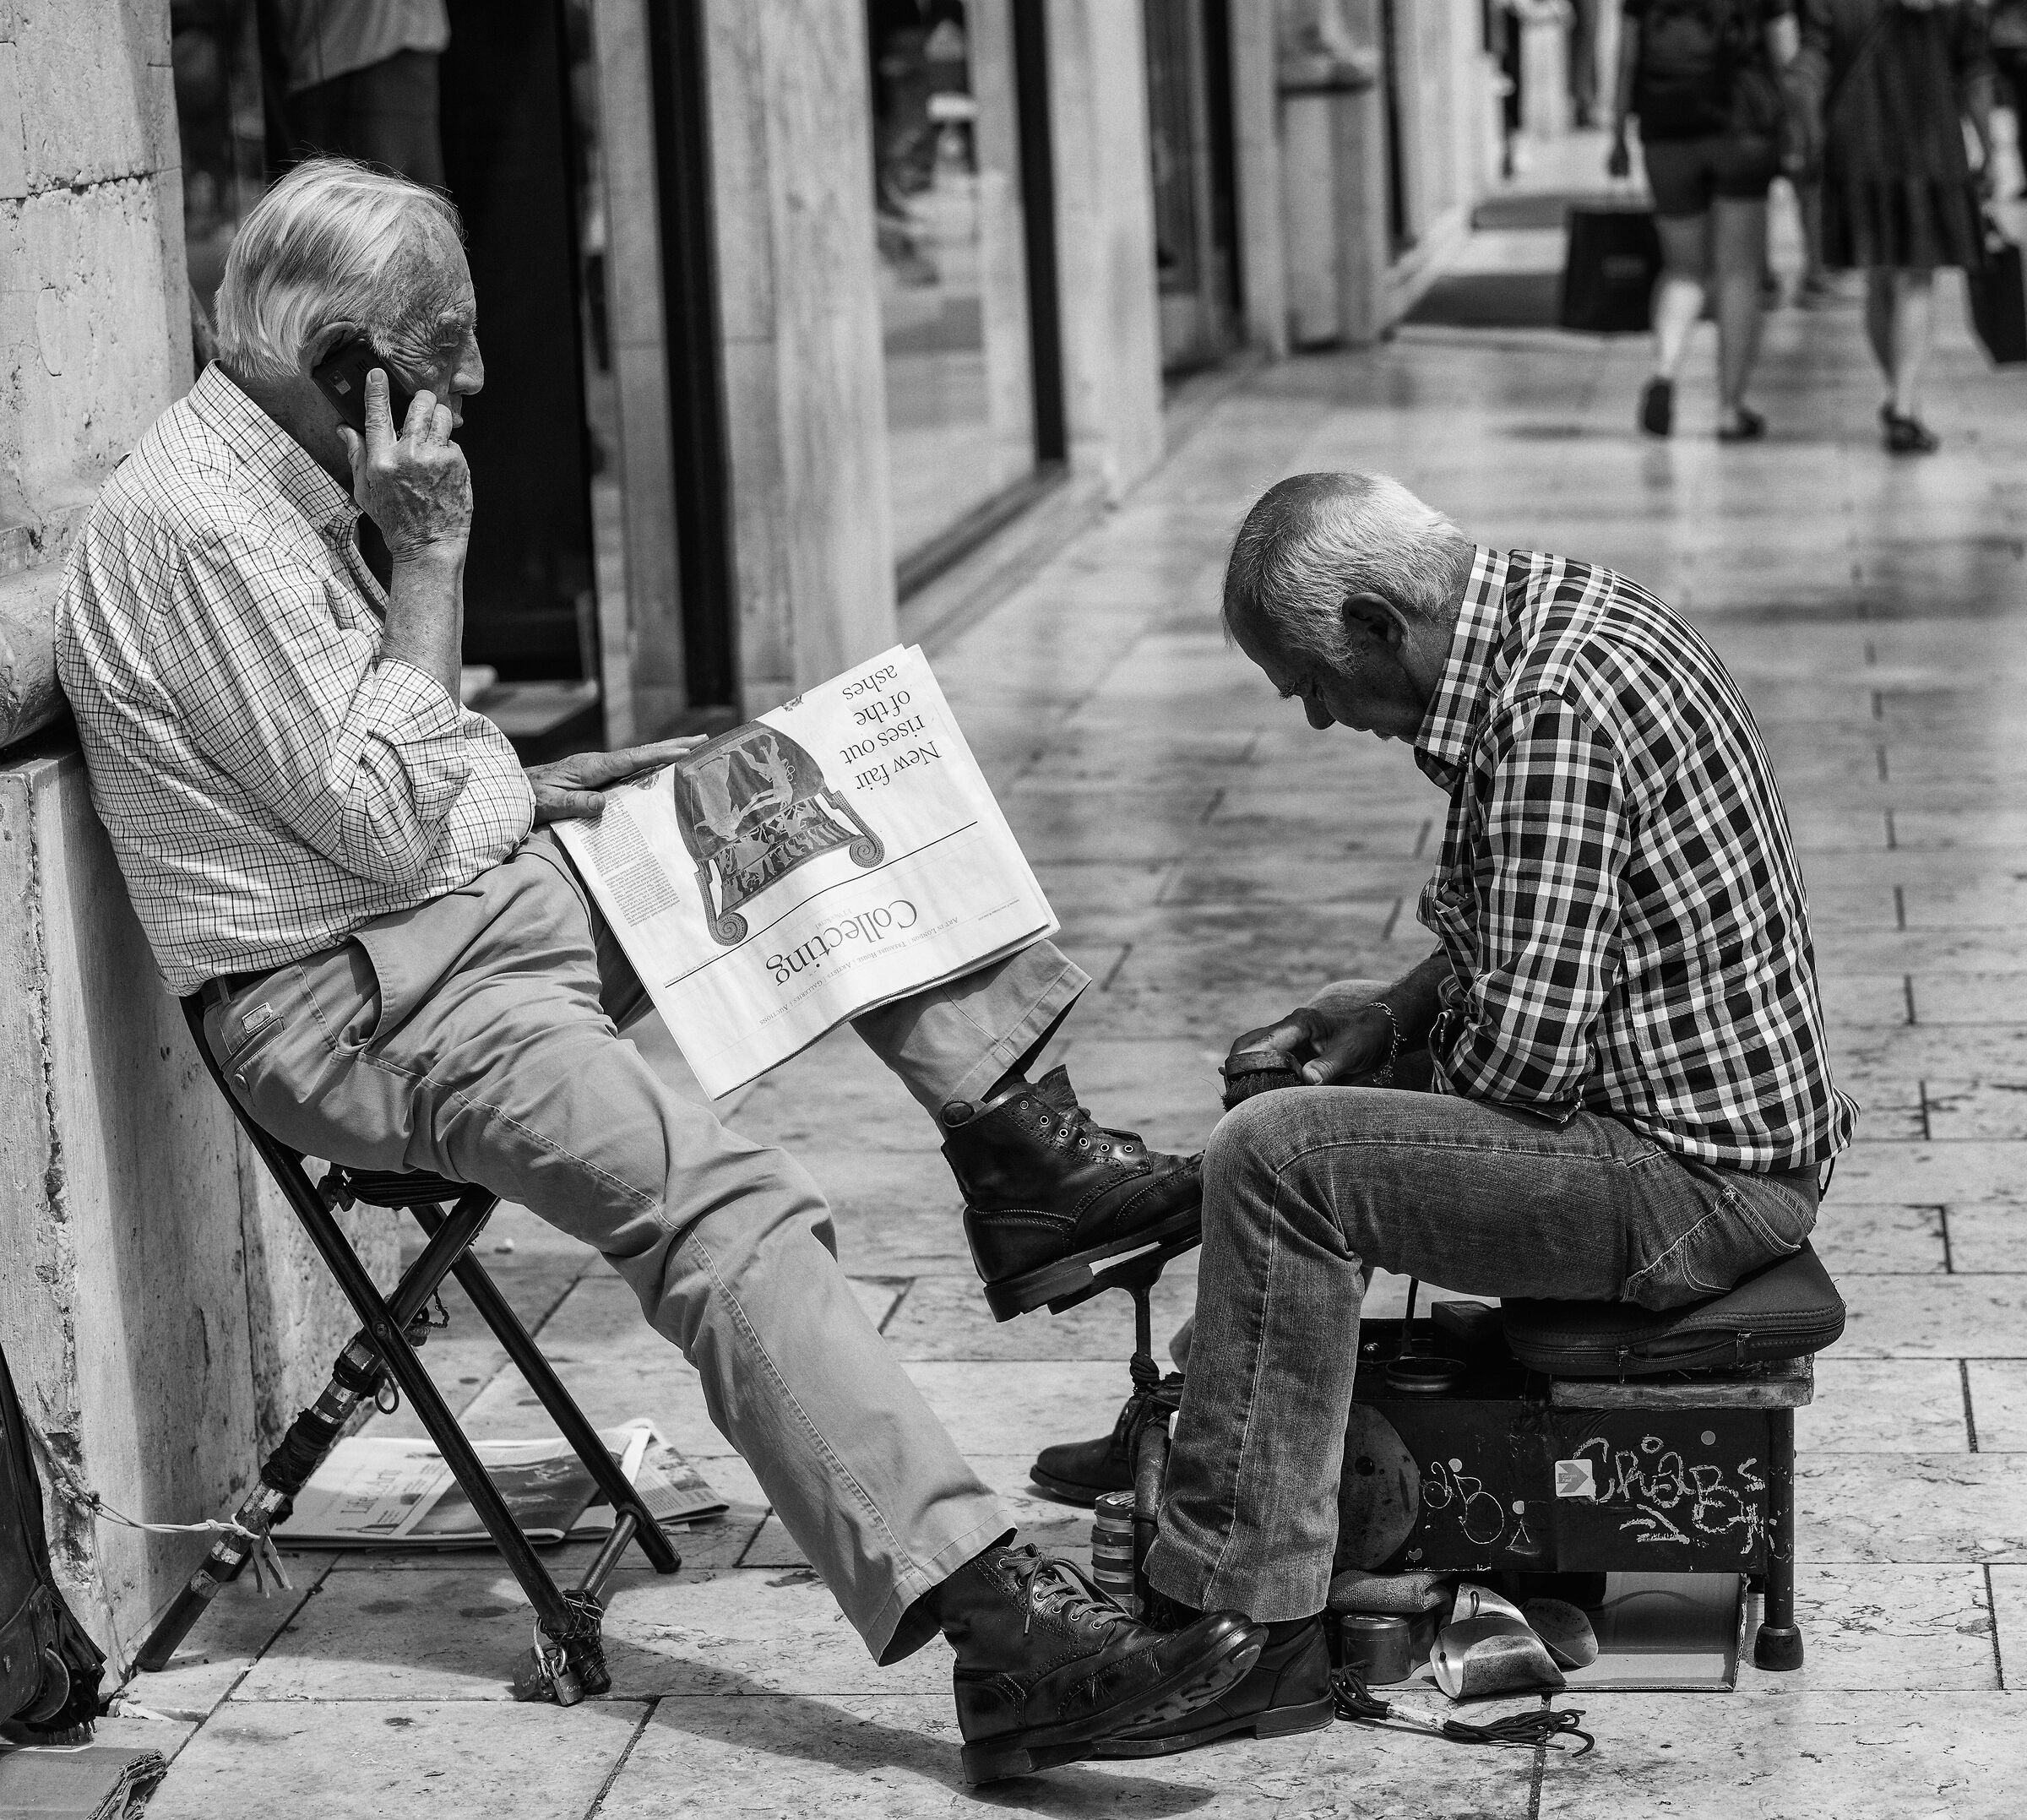 Lisbon-the shoeshine...